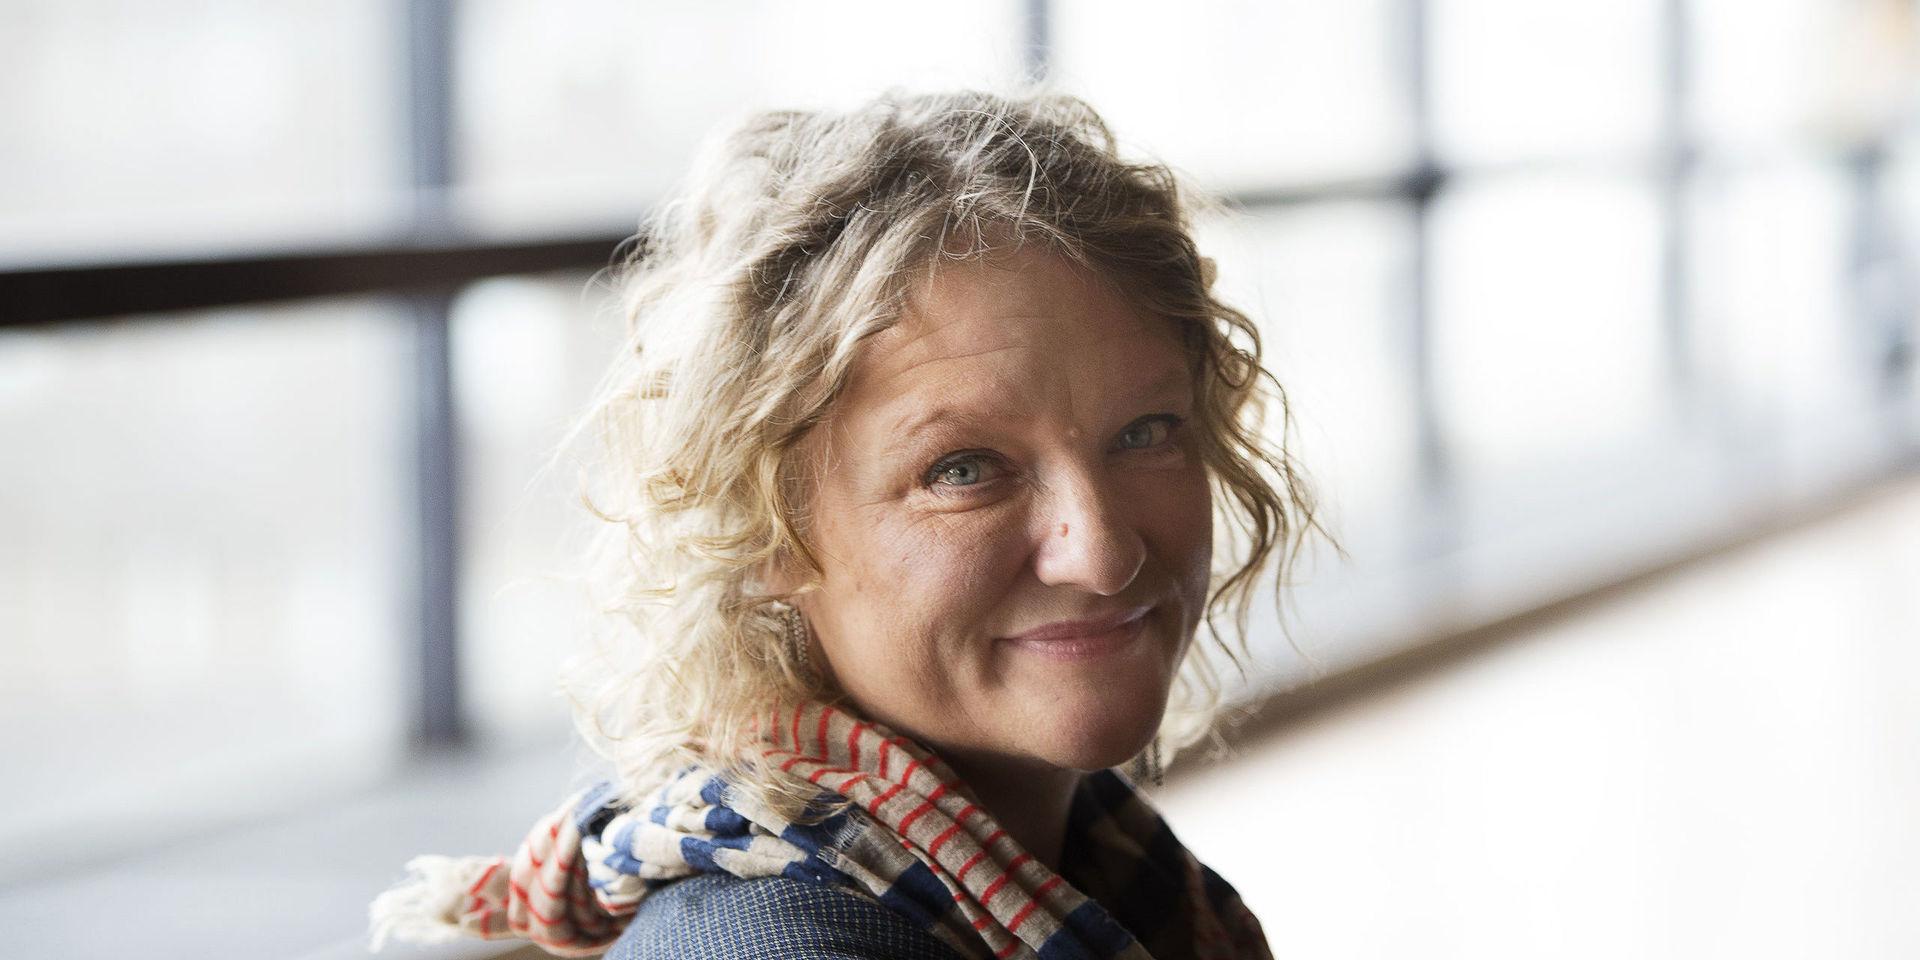 Anna Takanen är uppvuxen i Tågarp utanför Falkenberg och fick sin första teaterutbildning på Sturegymnasiet i Halmstad. Numera bor hon i Stockholm.